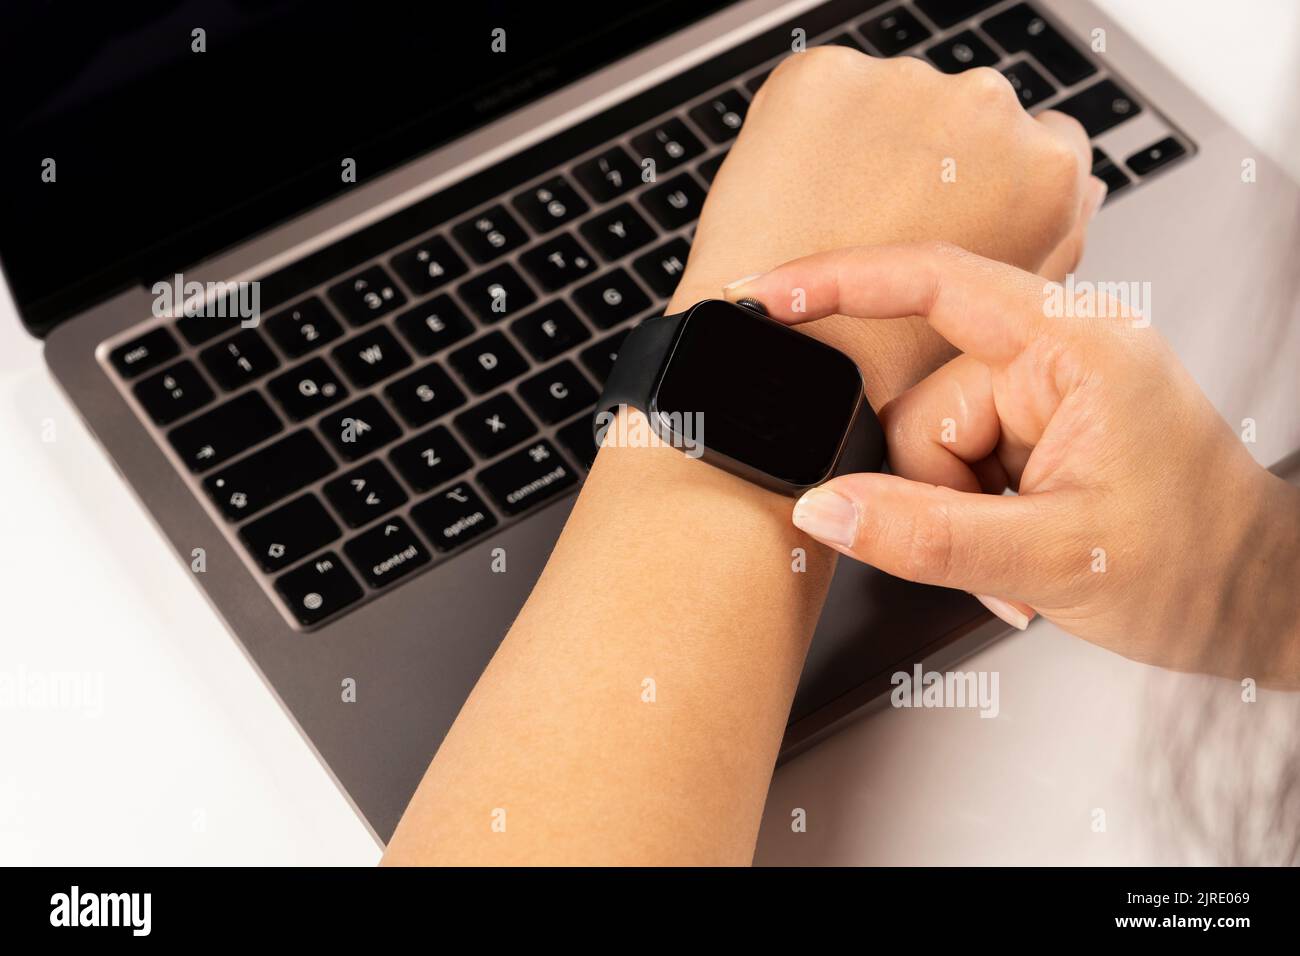 Utilizzando un moderno orologio intelligente, foto ravvicinata delle mani di una donna caucasica utilizzando un moderno orologio intelligente. Ha messo le mani sul suo laptop, controllando il battito del cuore. Foto Stock